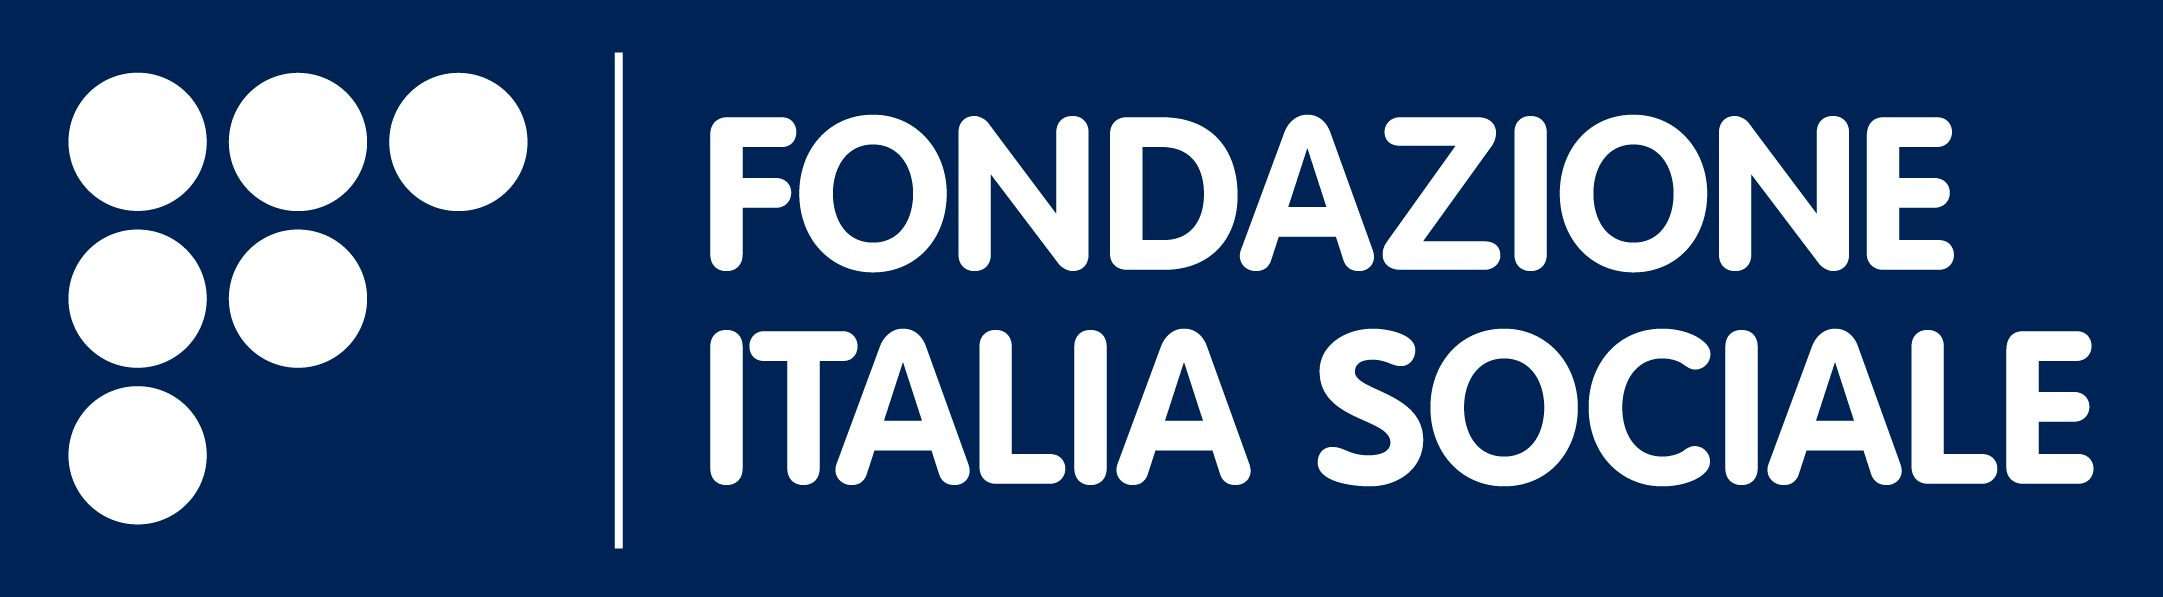 Italo and Italia Sociale Foundation